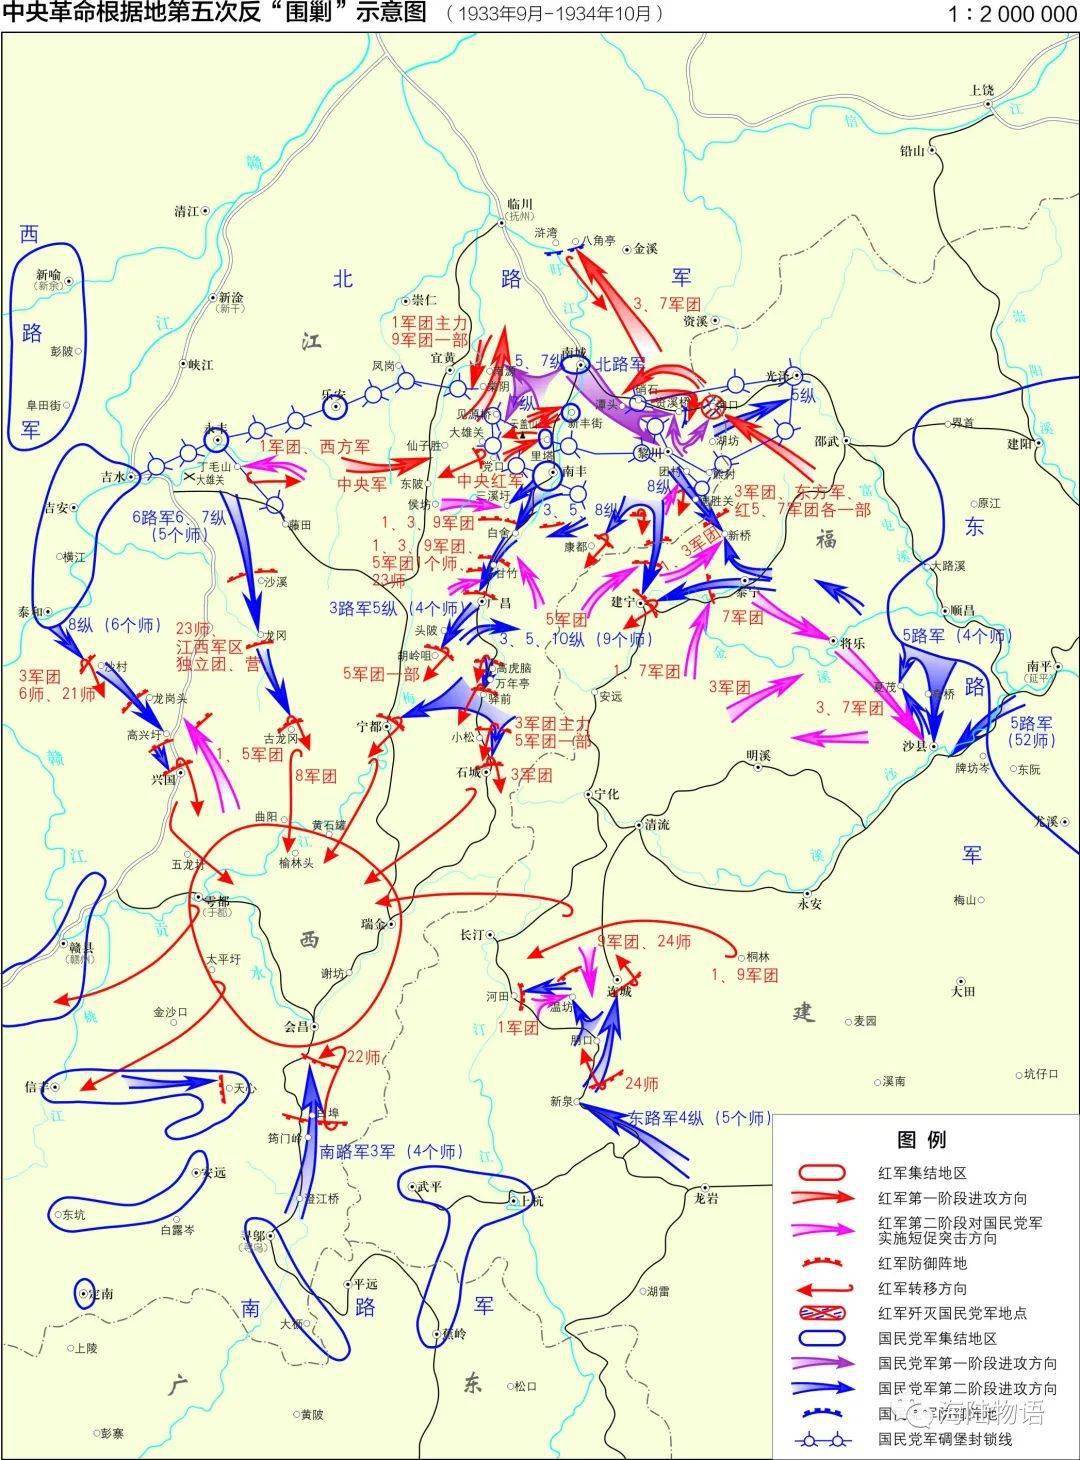 历史| 红色地图:中央革命根据地第五次反"围剿"示意图